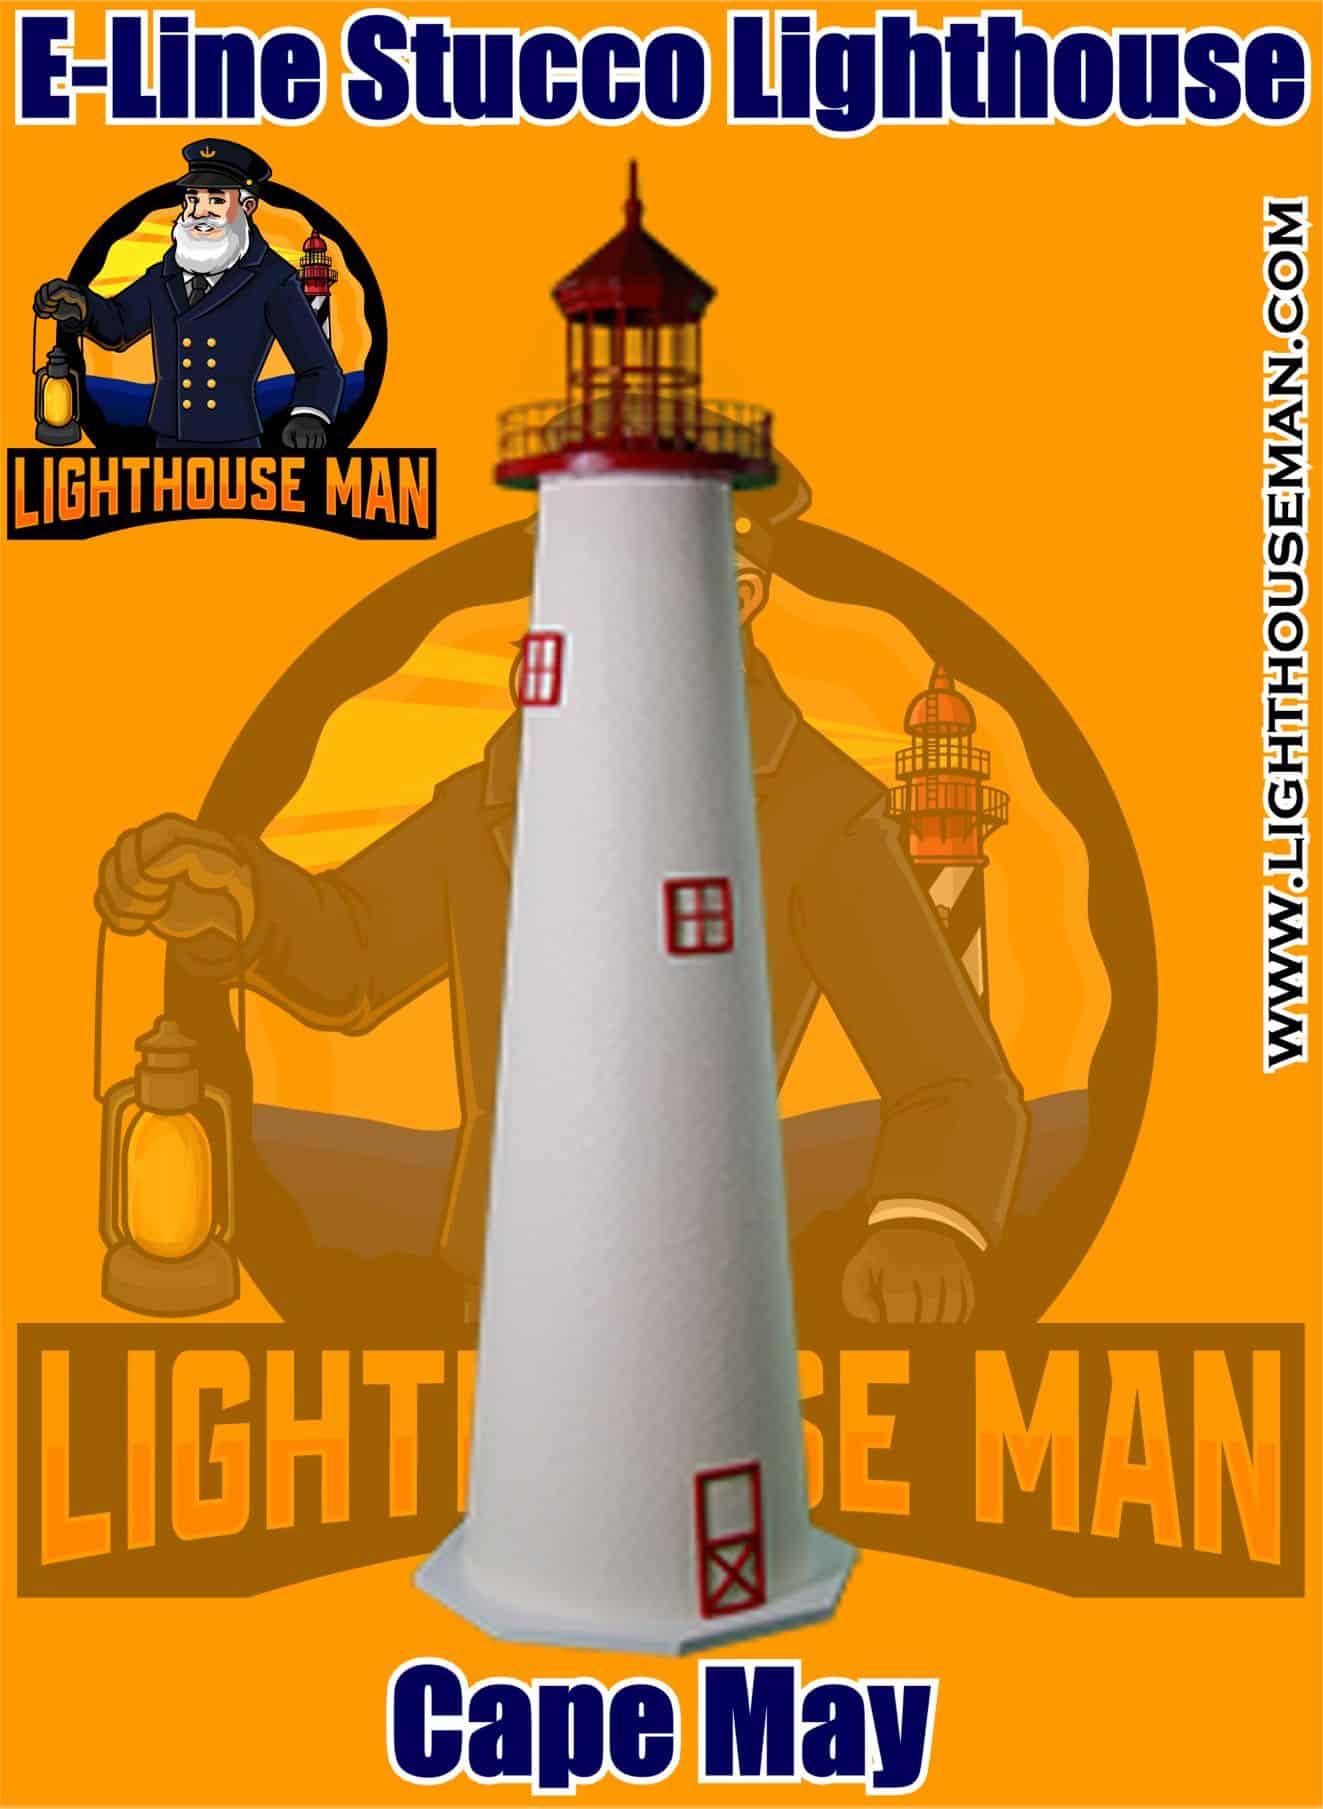 Cape May E-line Stucco Lighthouse